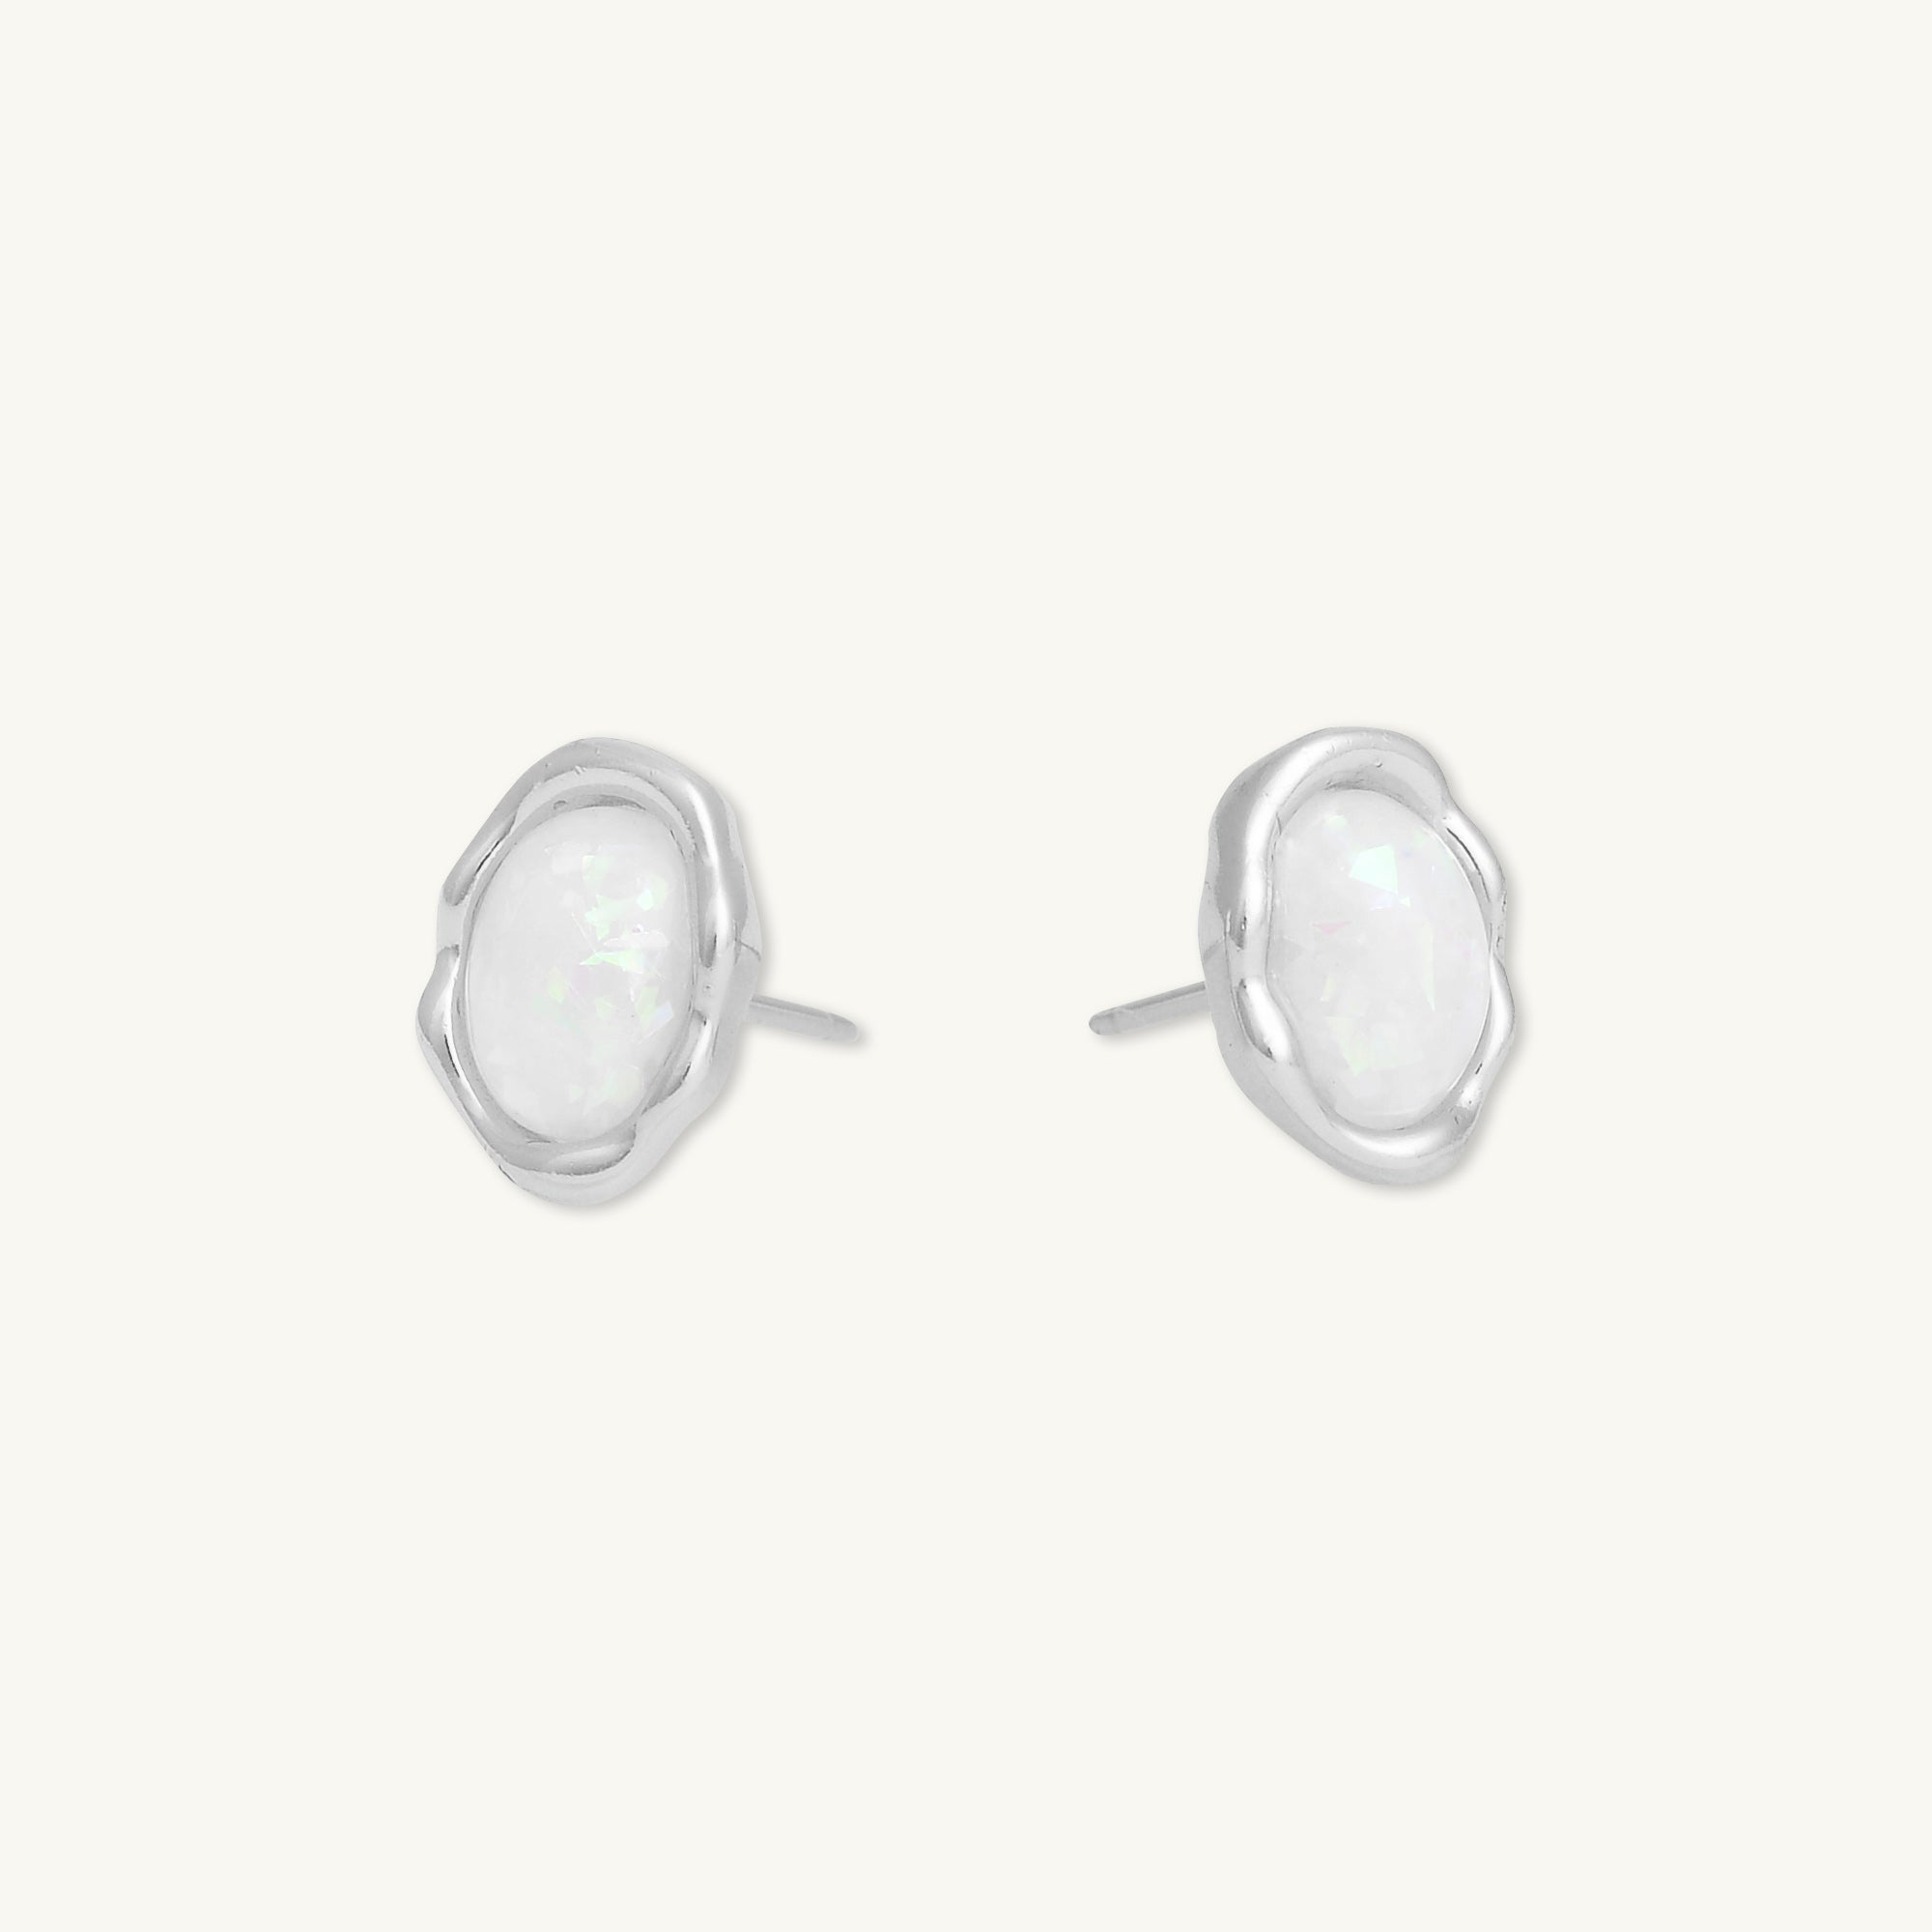 Vintage Oval Opal Stud Earrings